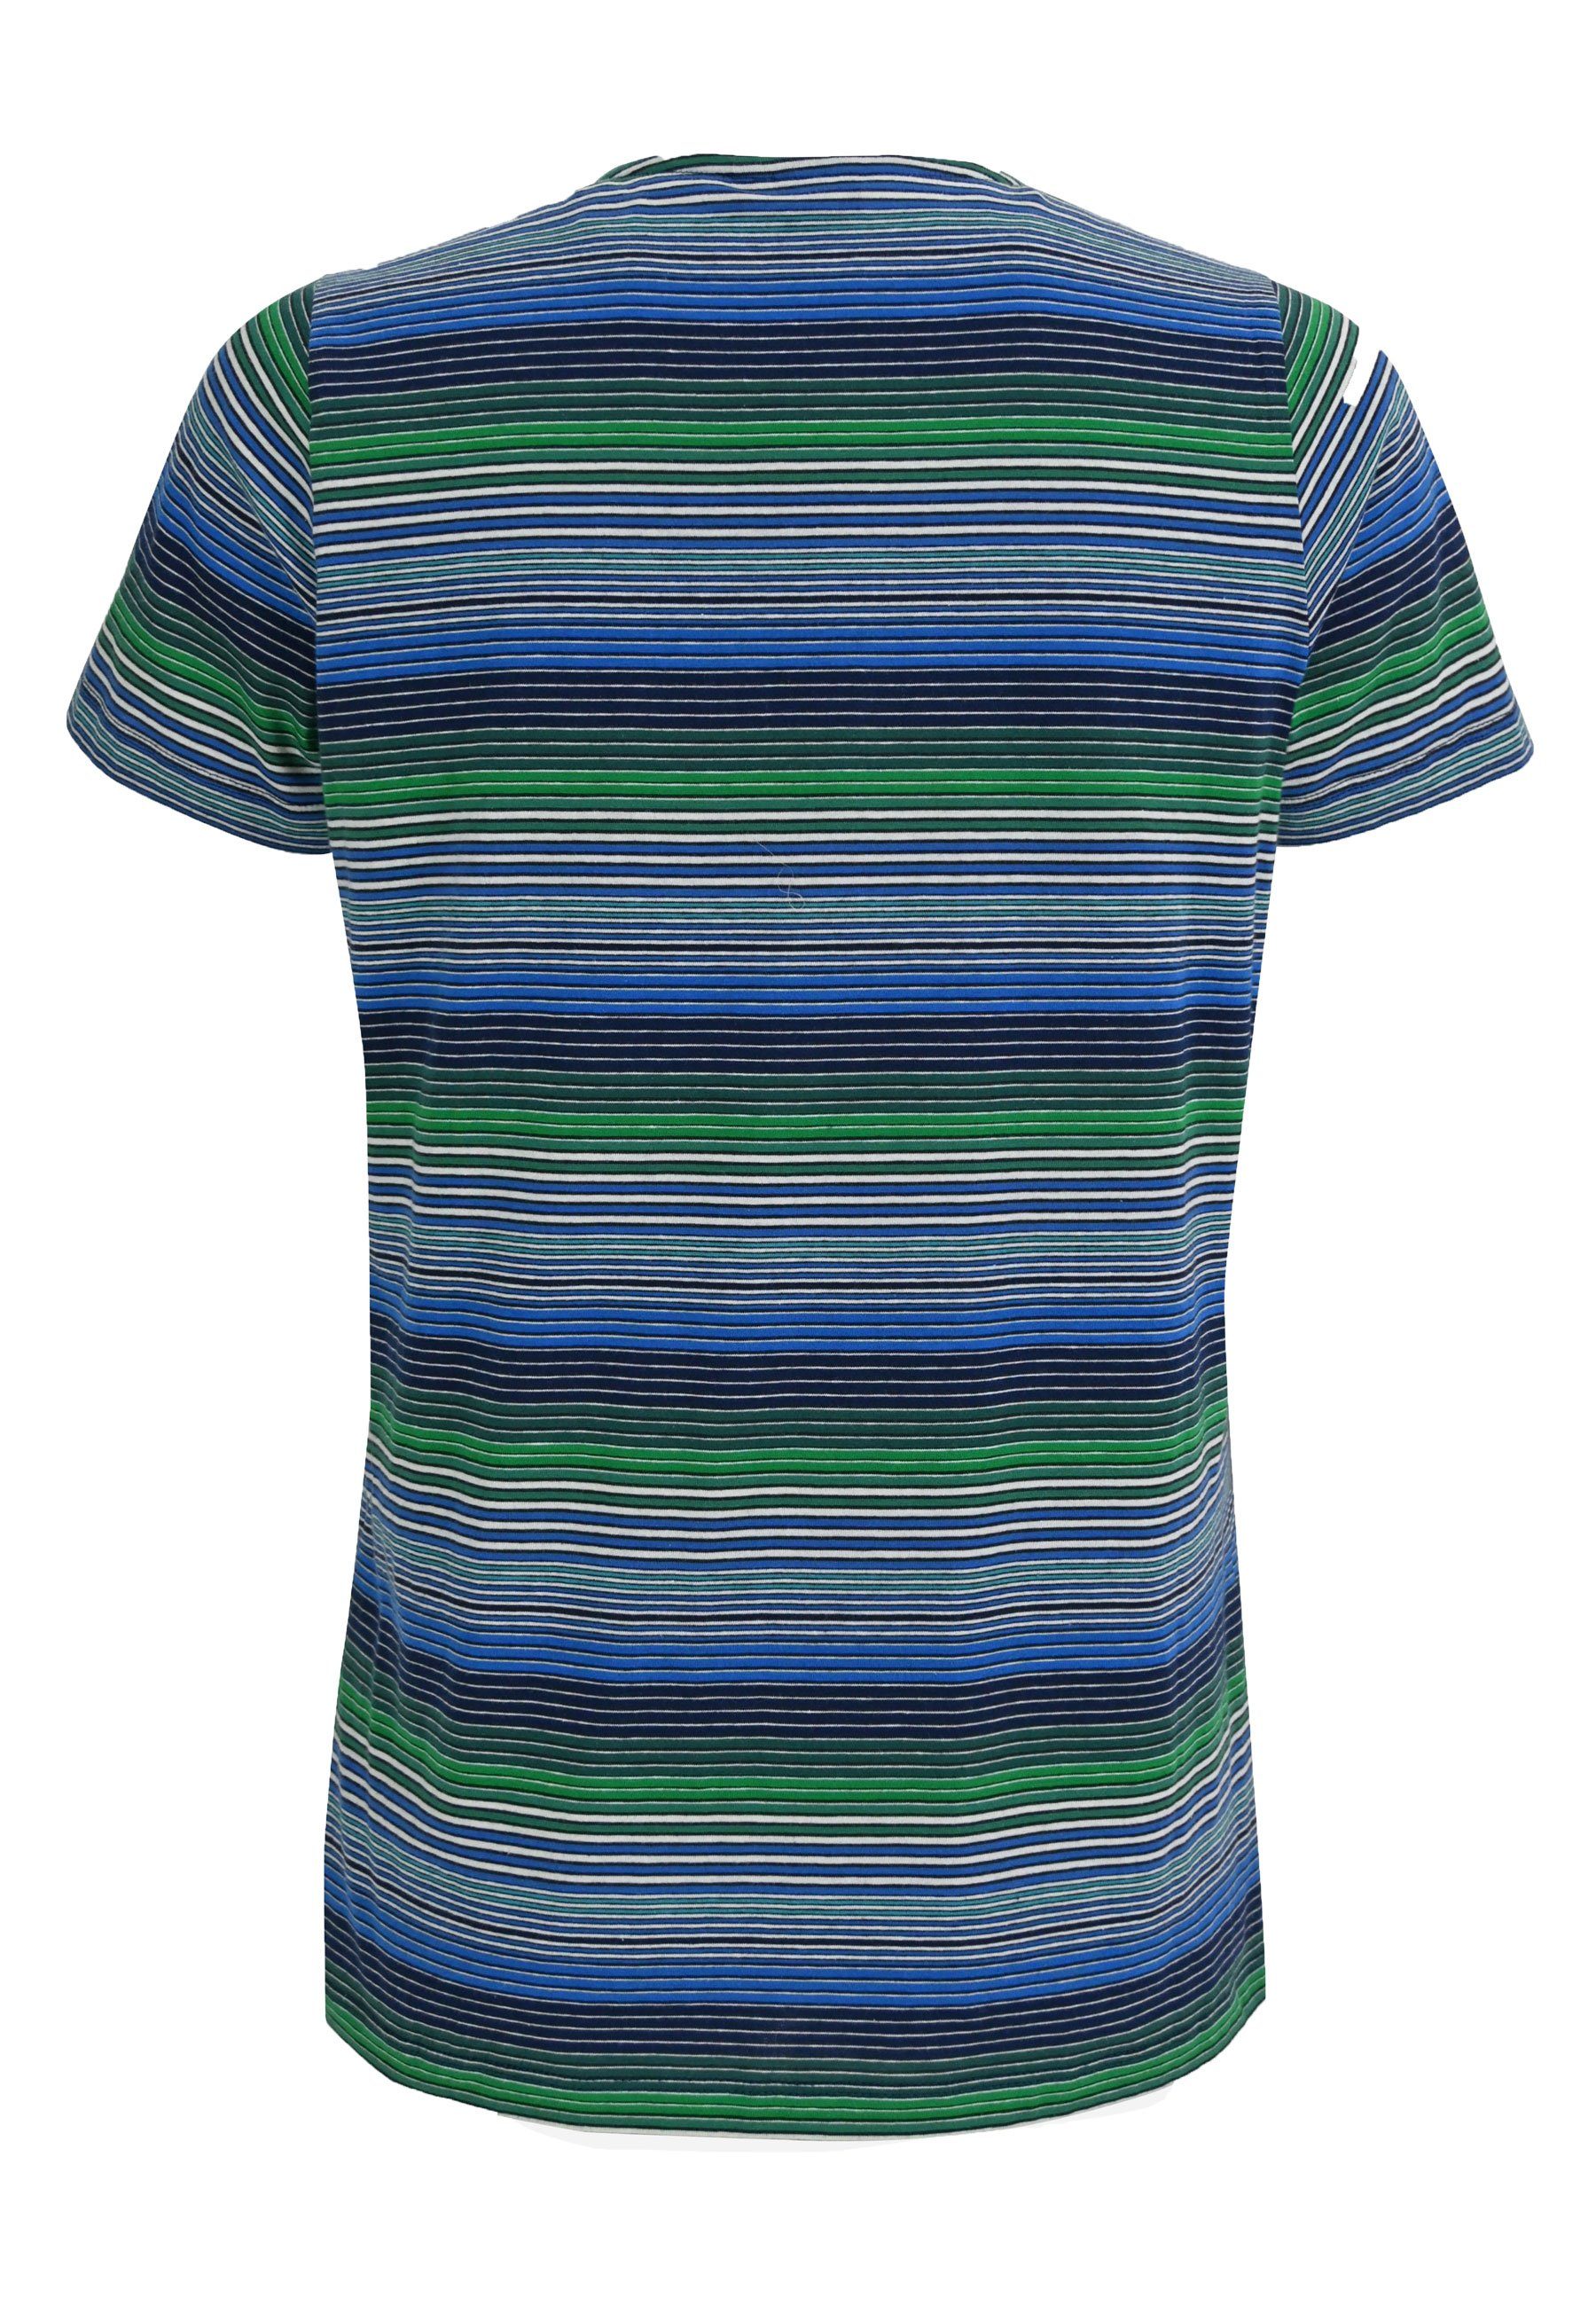 Elkline T-Shirt Candystriped bunt - green blue gestreift